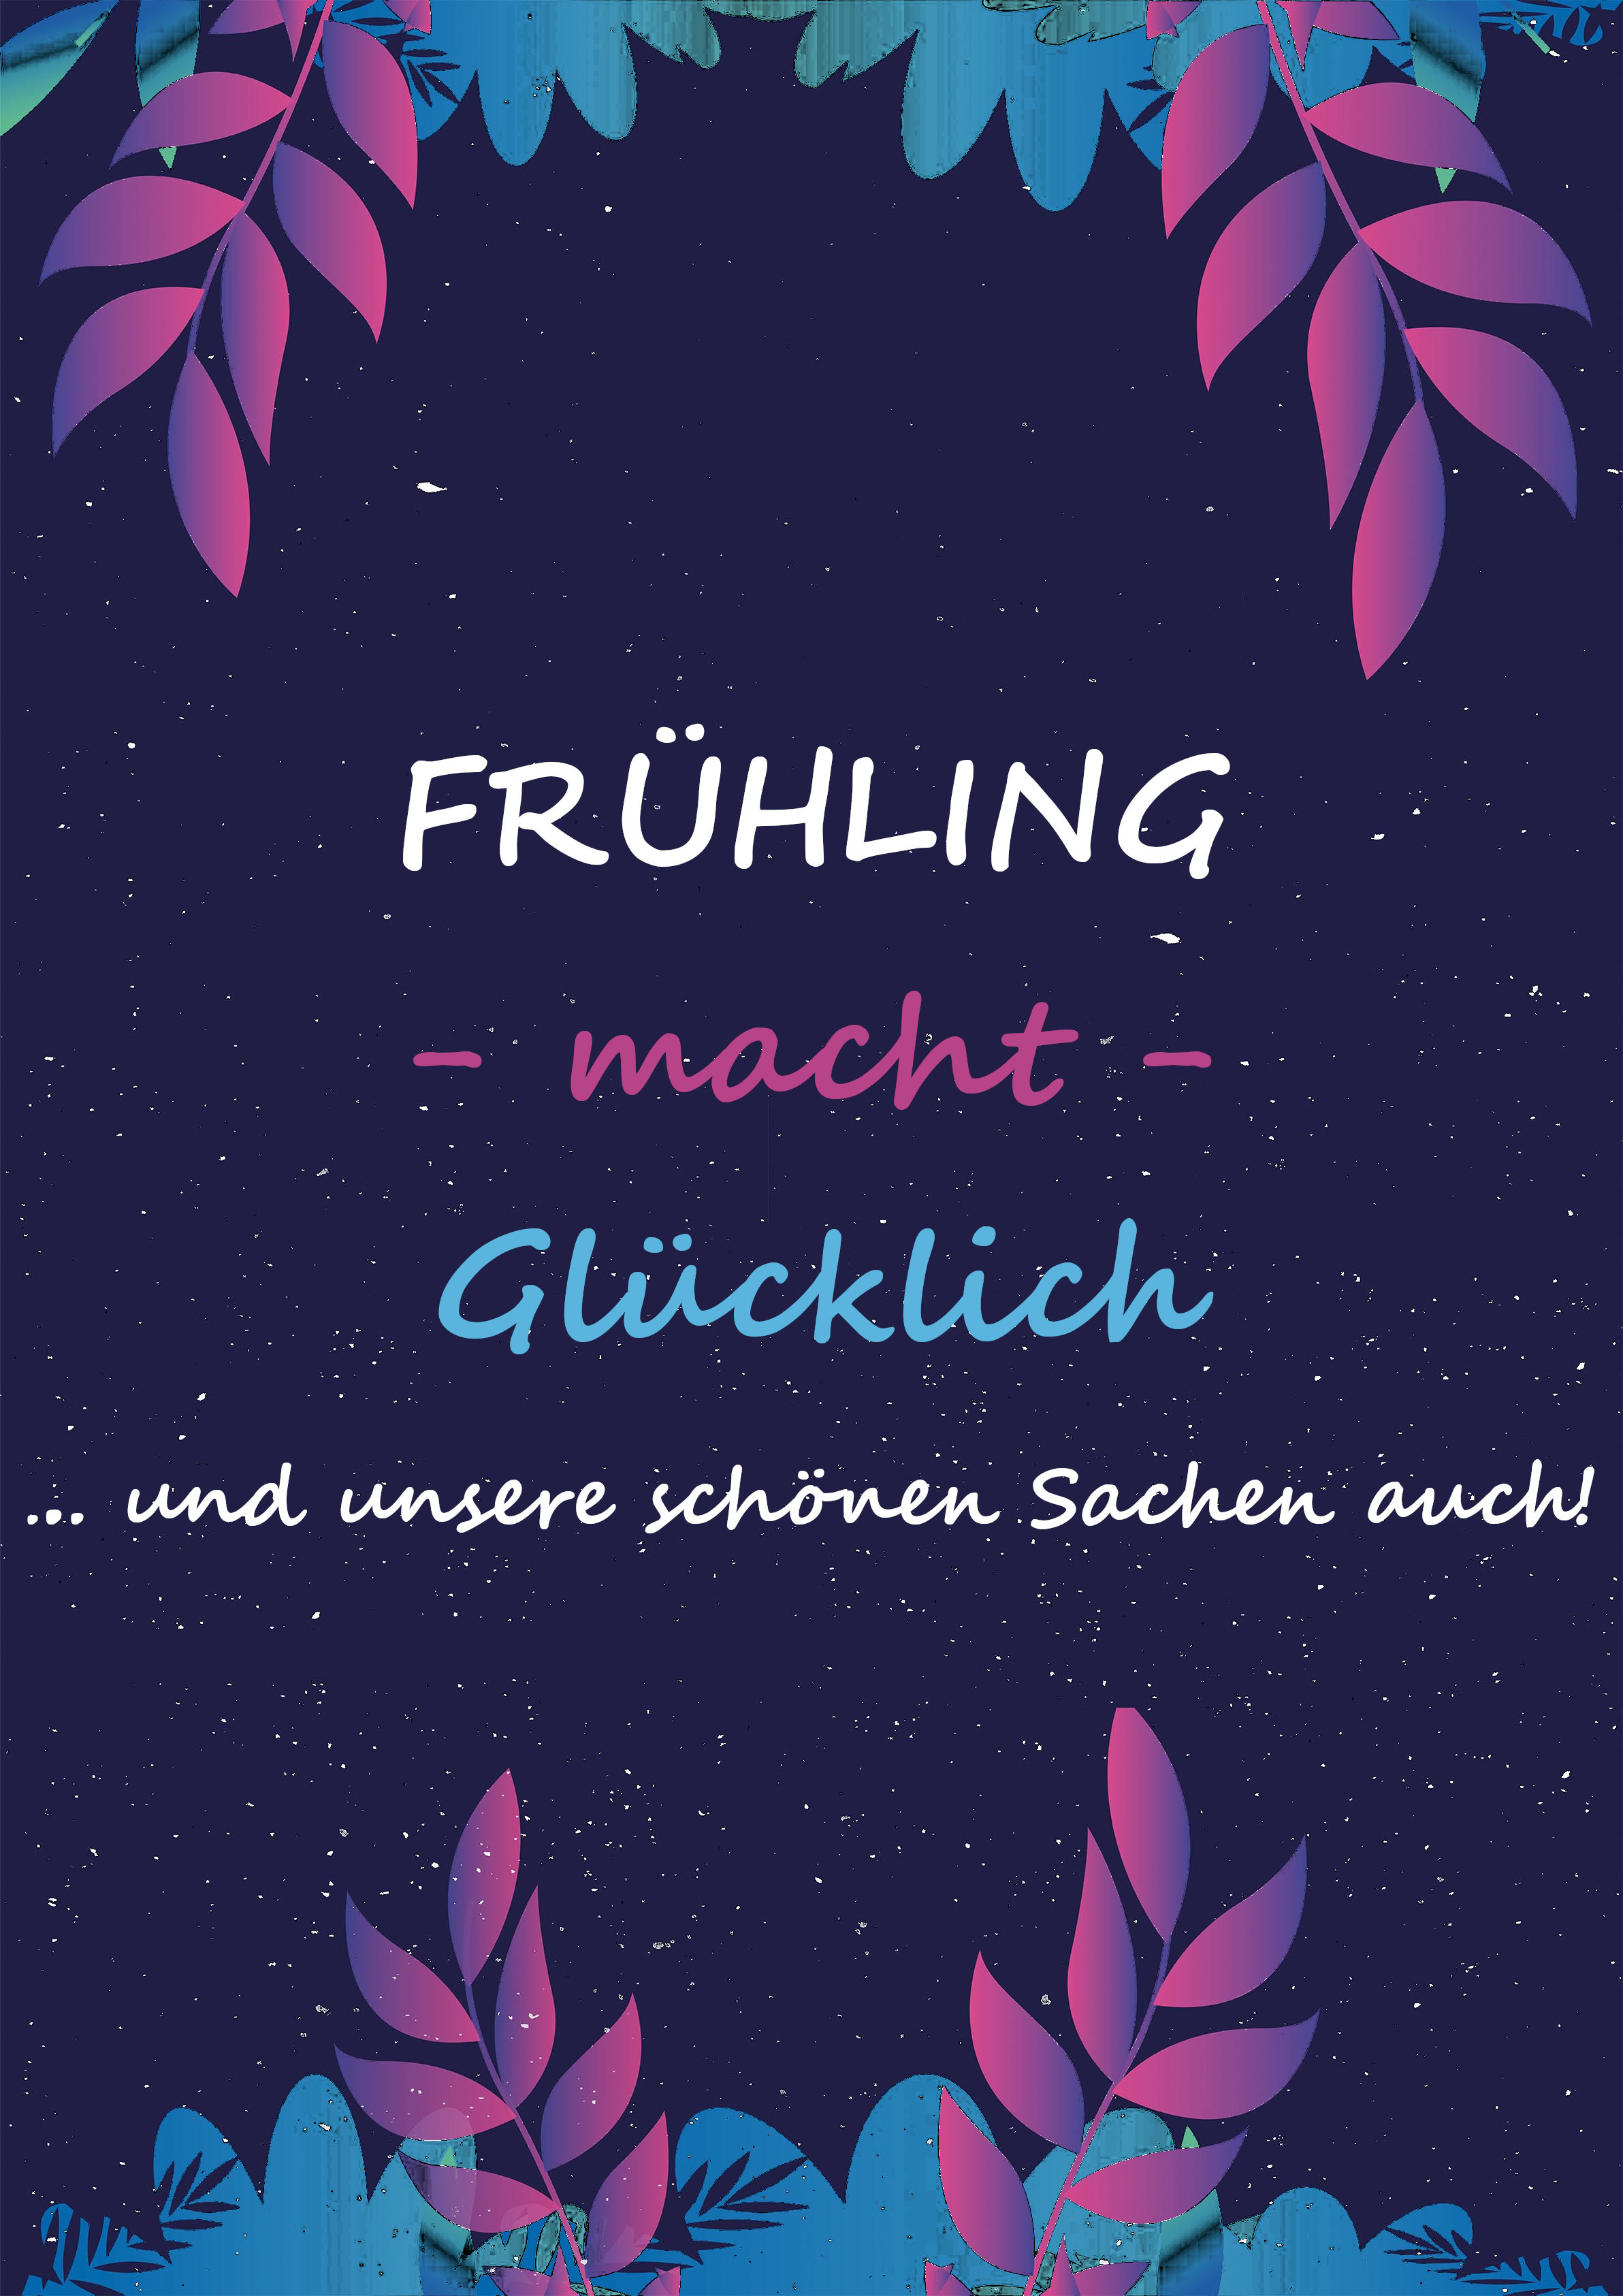 freuehling_gluecklich-bearbeitet